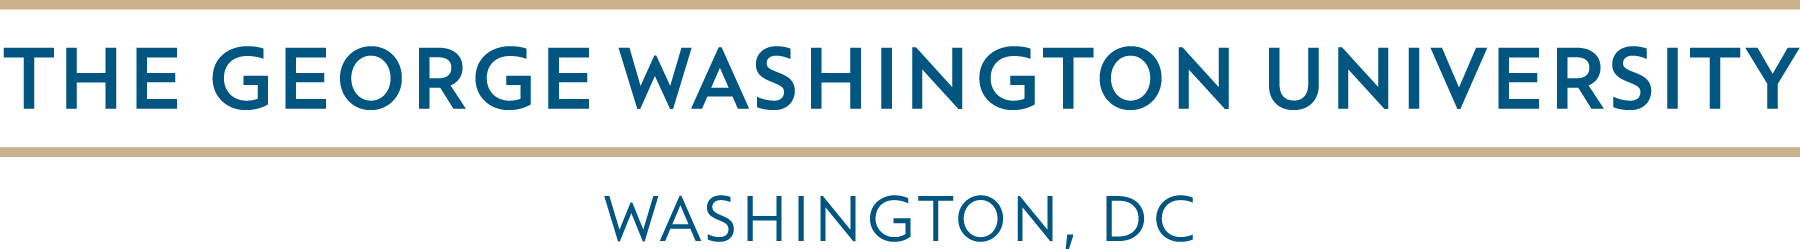 George Washington University Logo - Horizontal Logo. Marketing & Creative Services. The George